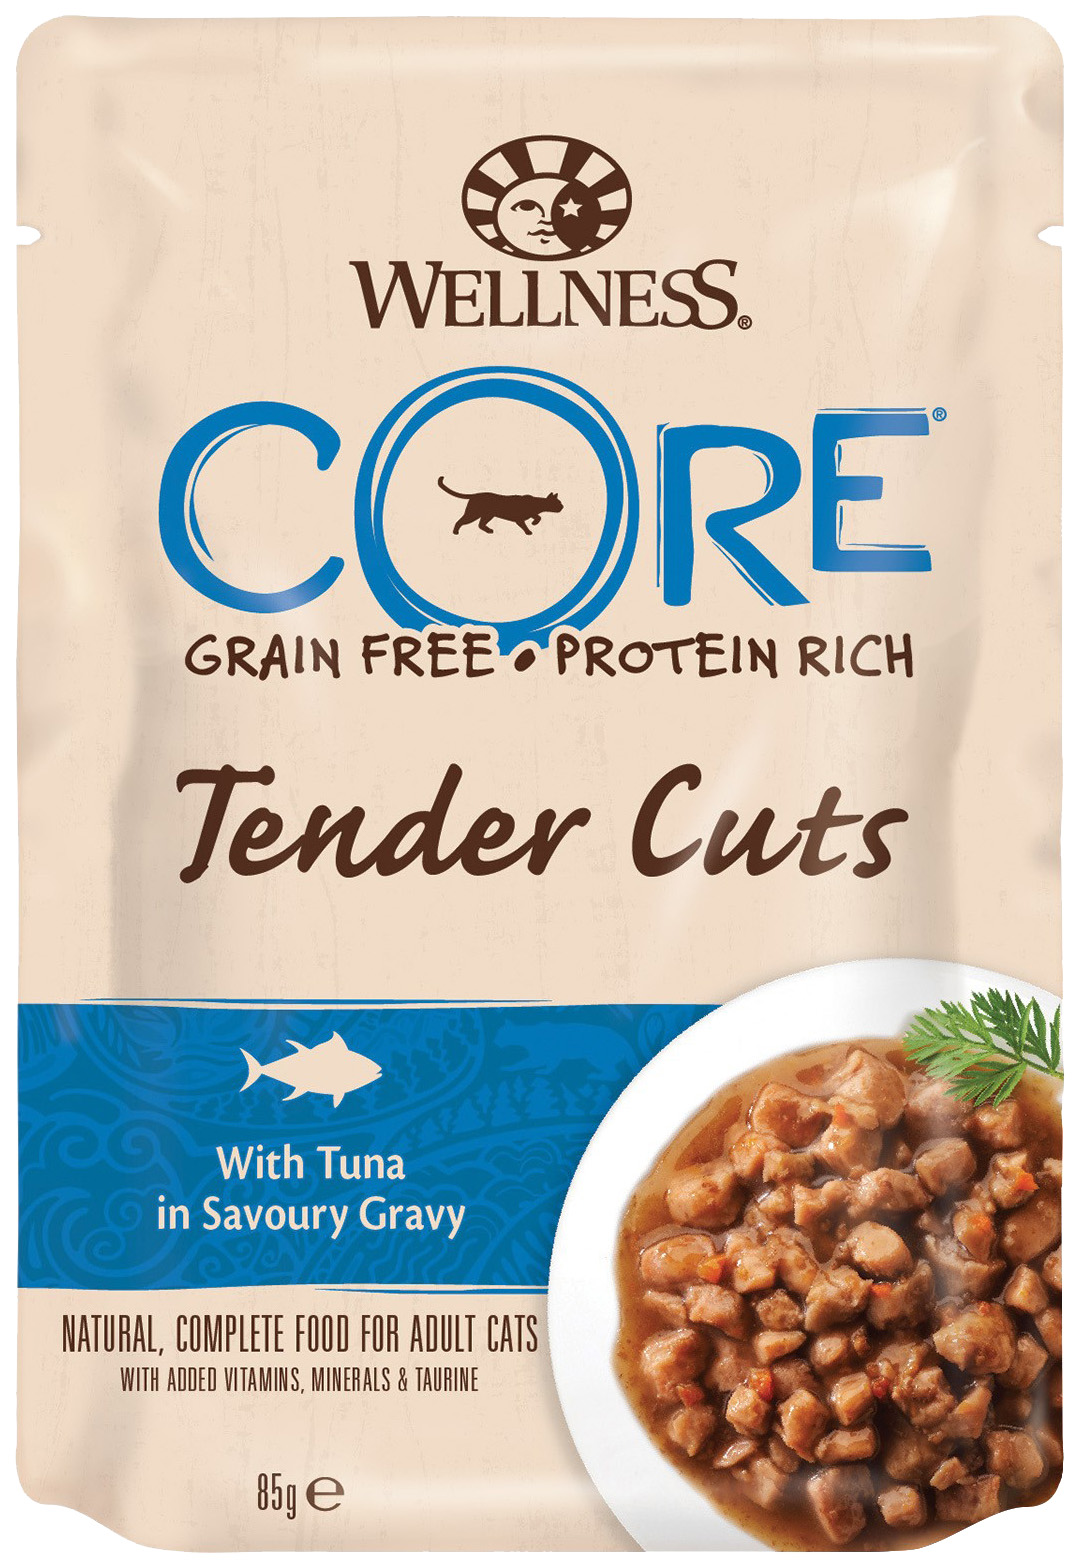 

Влажный корм для кошек Wellness CORE Tender Cuts, тунец в пикантном соусе, 85г, Tender Cuts